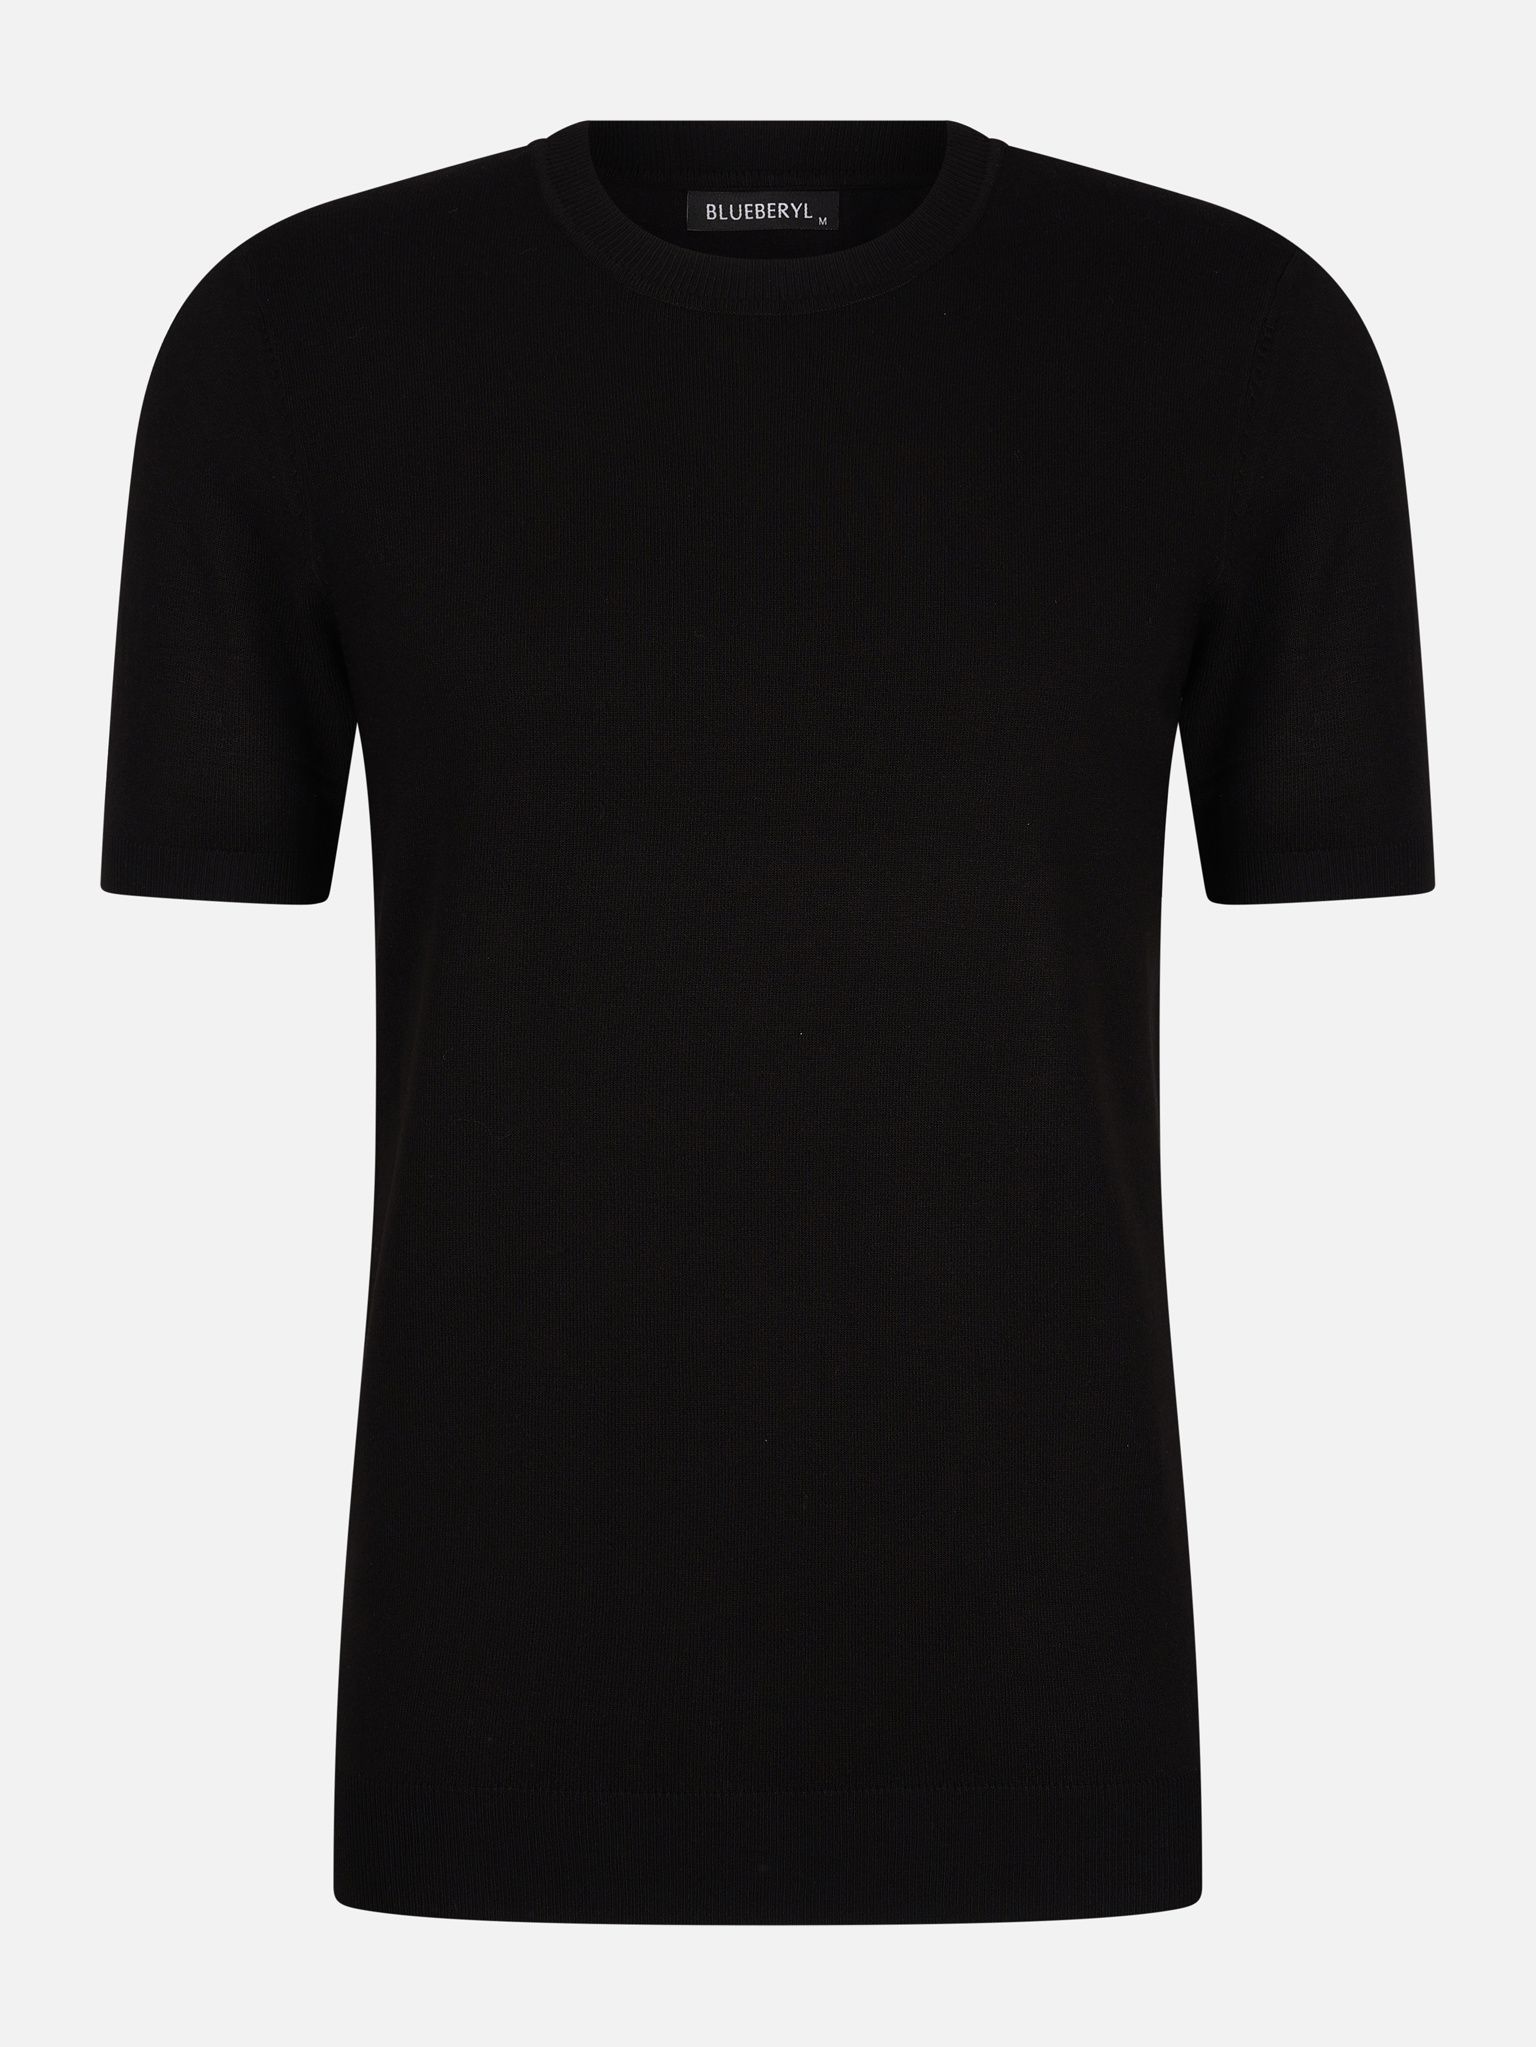 boom Alstublieft Eigenaardig Zwart T-shirt heren kopen voor €29,95 | Valenci - VALENCI